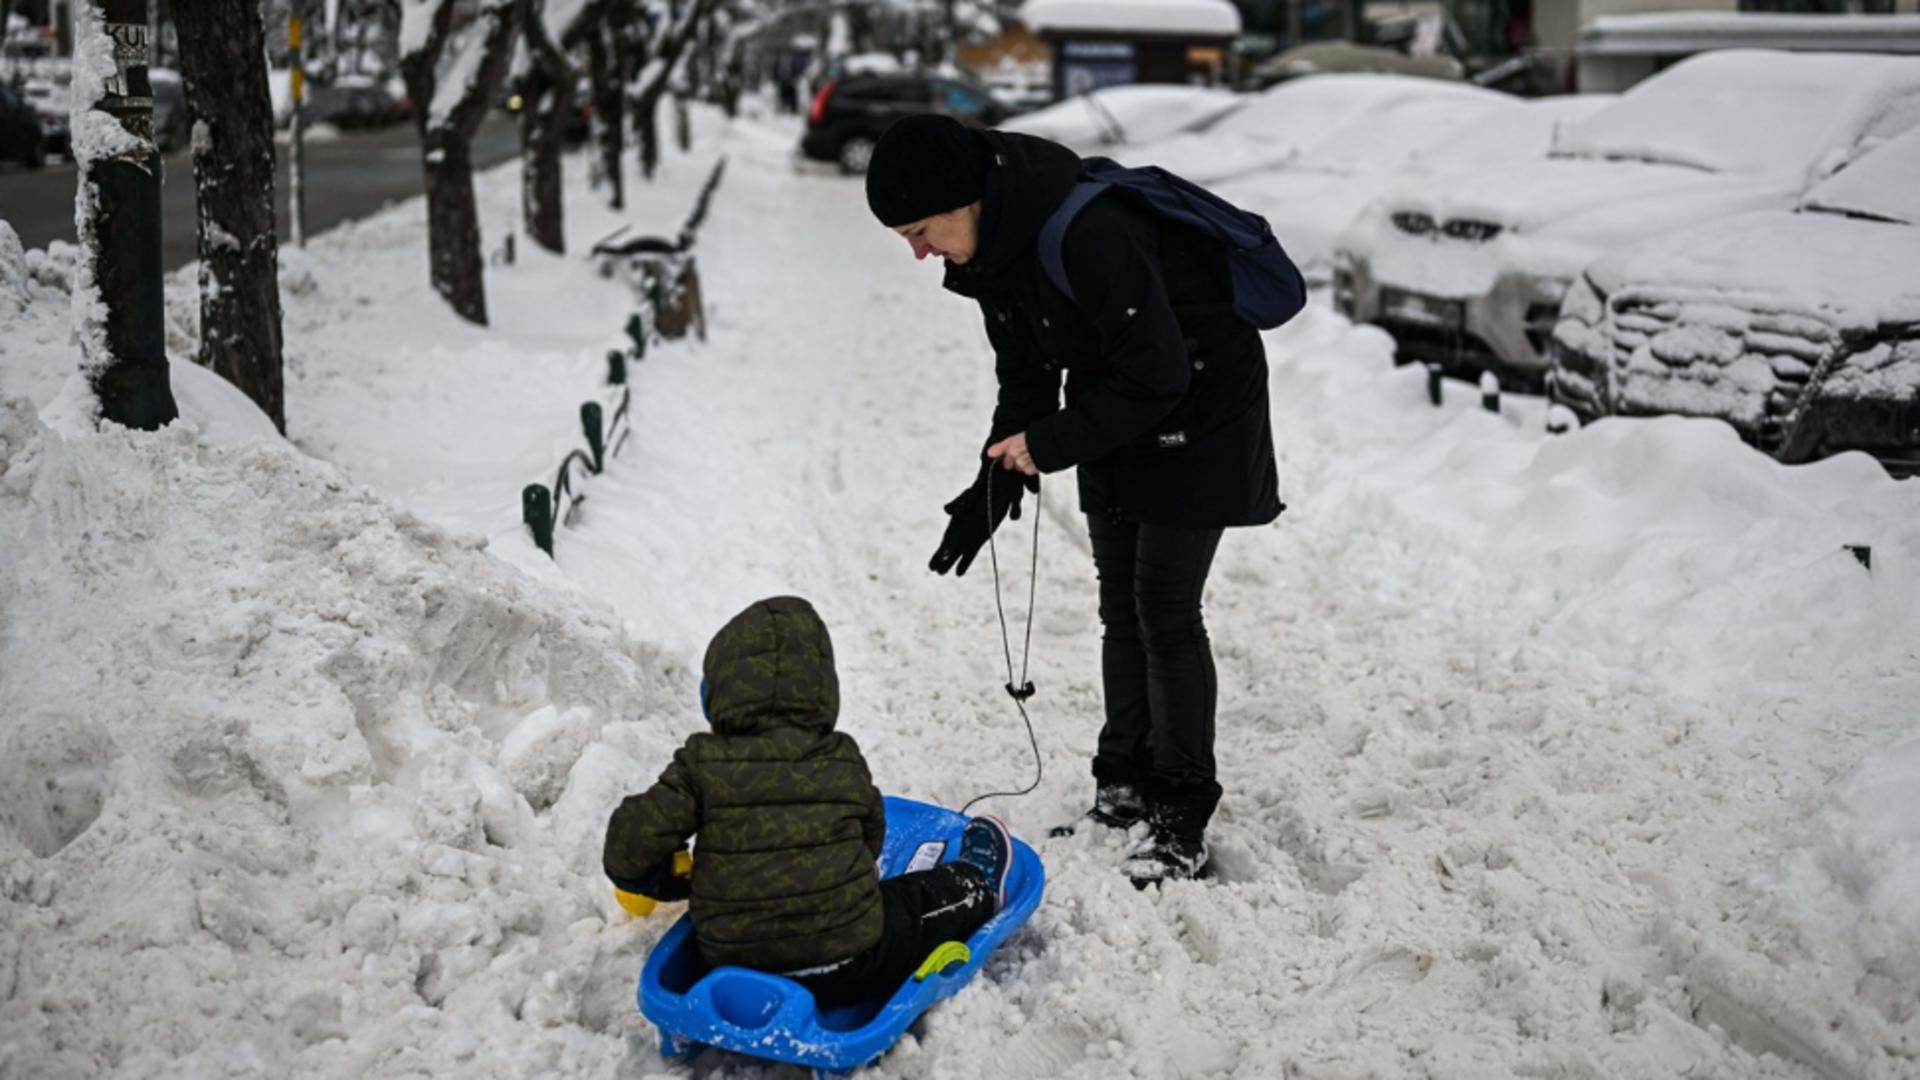 Răcire bruscă a vremii - 3 zile de iarnă grea, în România / Foto: Profi Media